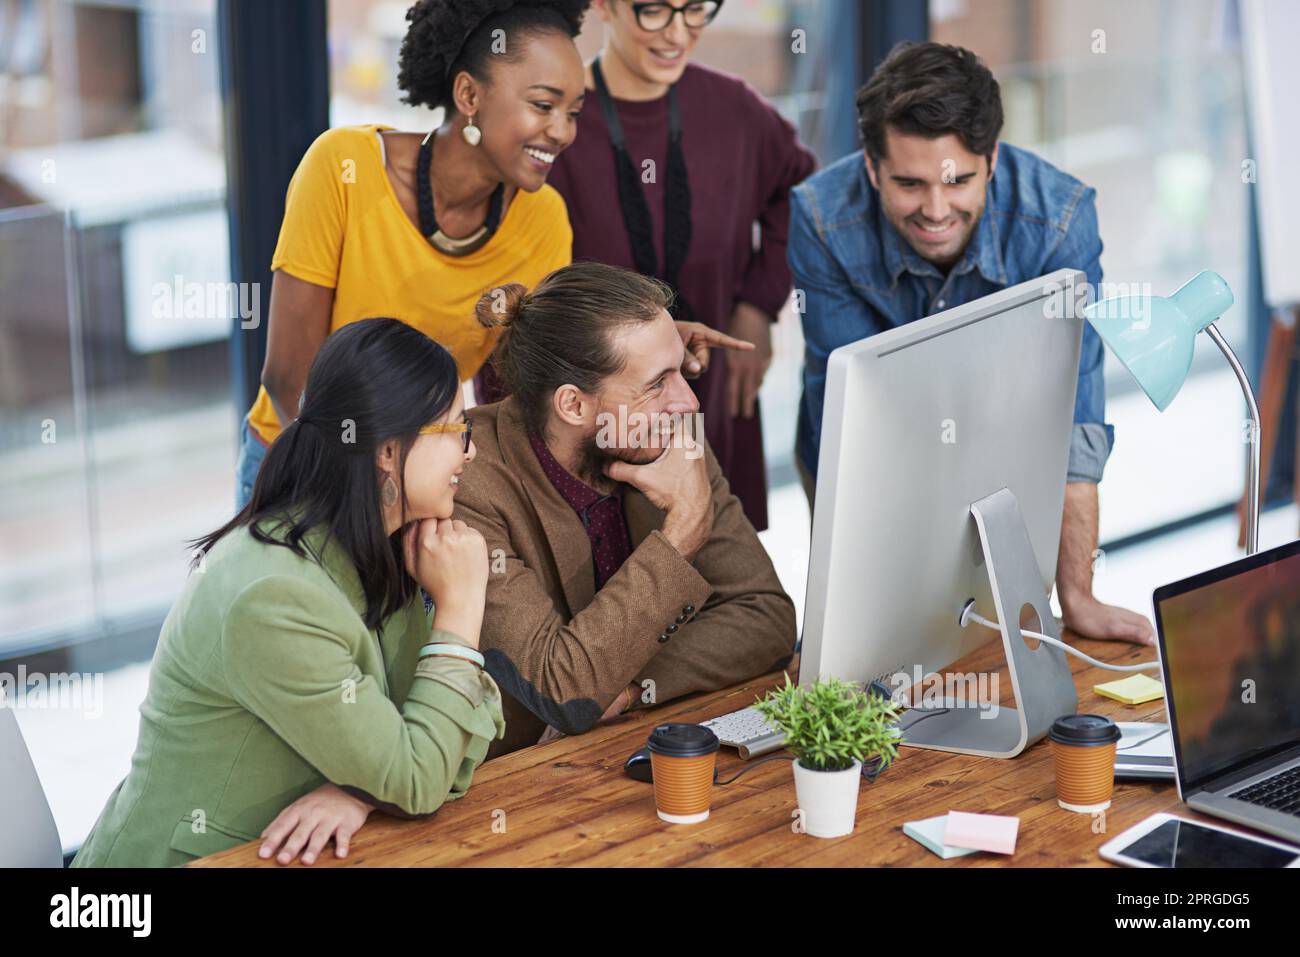 Motiviert durch ihren Wunsch zu erreichen. Eine Gruppe von kreativen Geschäftsleuten, die sich etwas auf einem Computer ansieht. Stockfoto